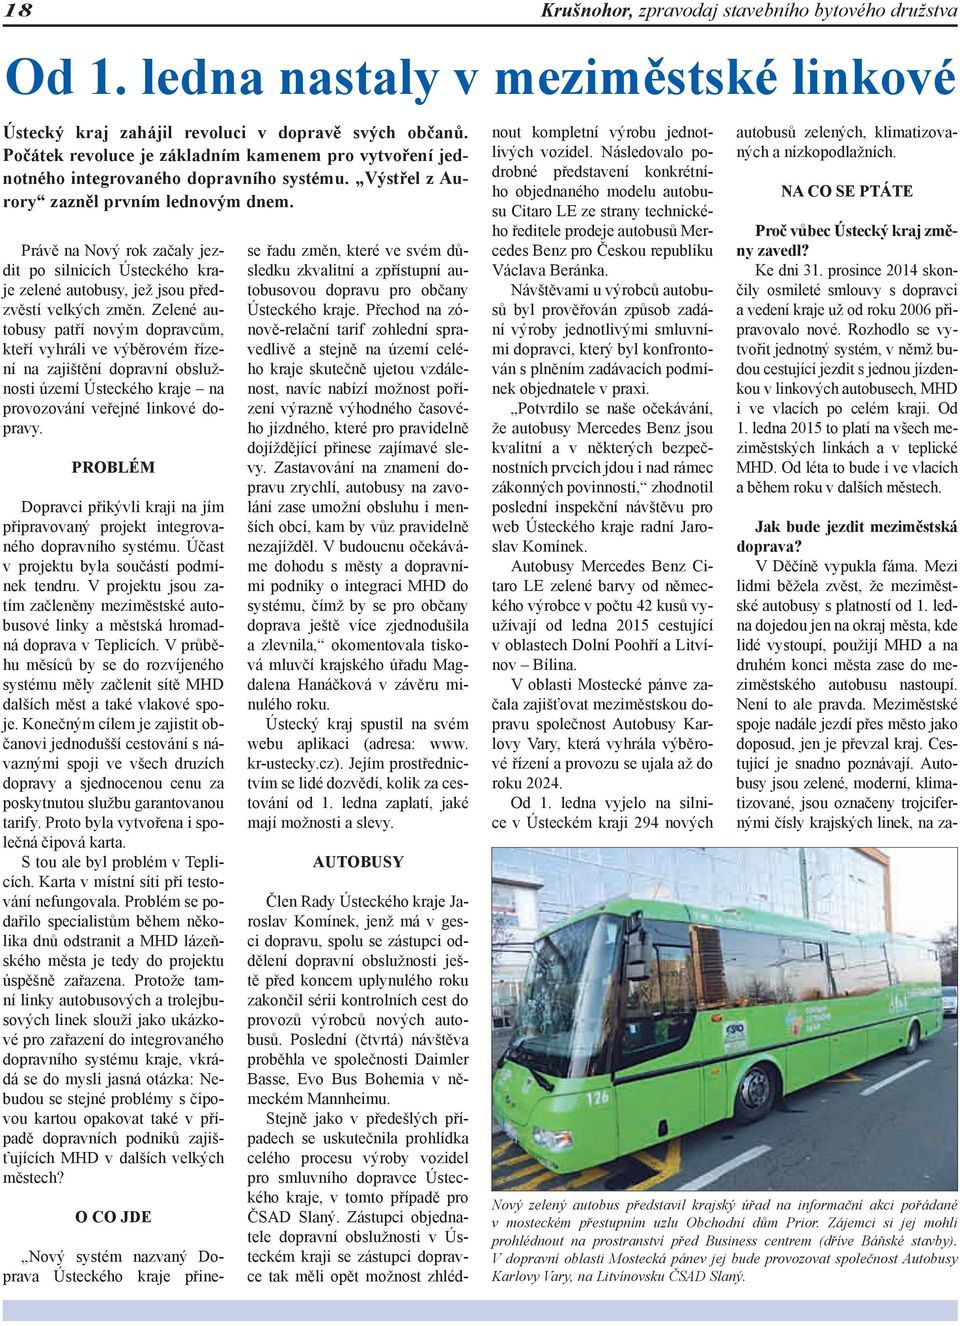 Právě na Nový rok začaly jezdit po silnicích Ústeckého kraje zelené autobusy, jež jsou předzvěstí velkých změn.